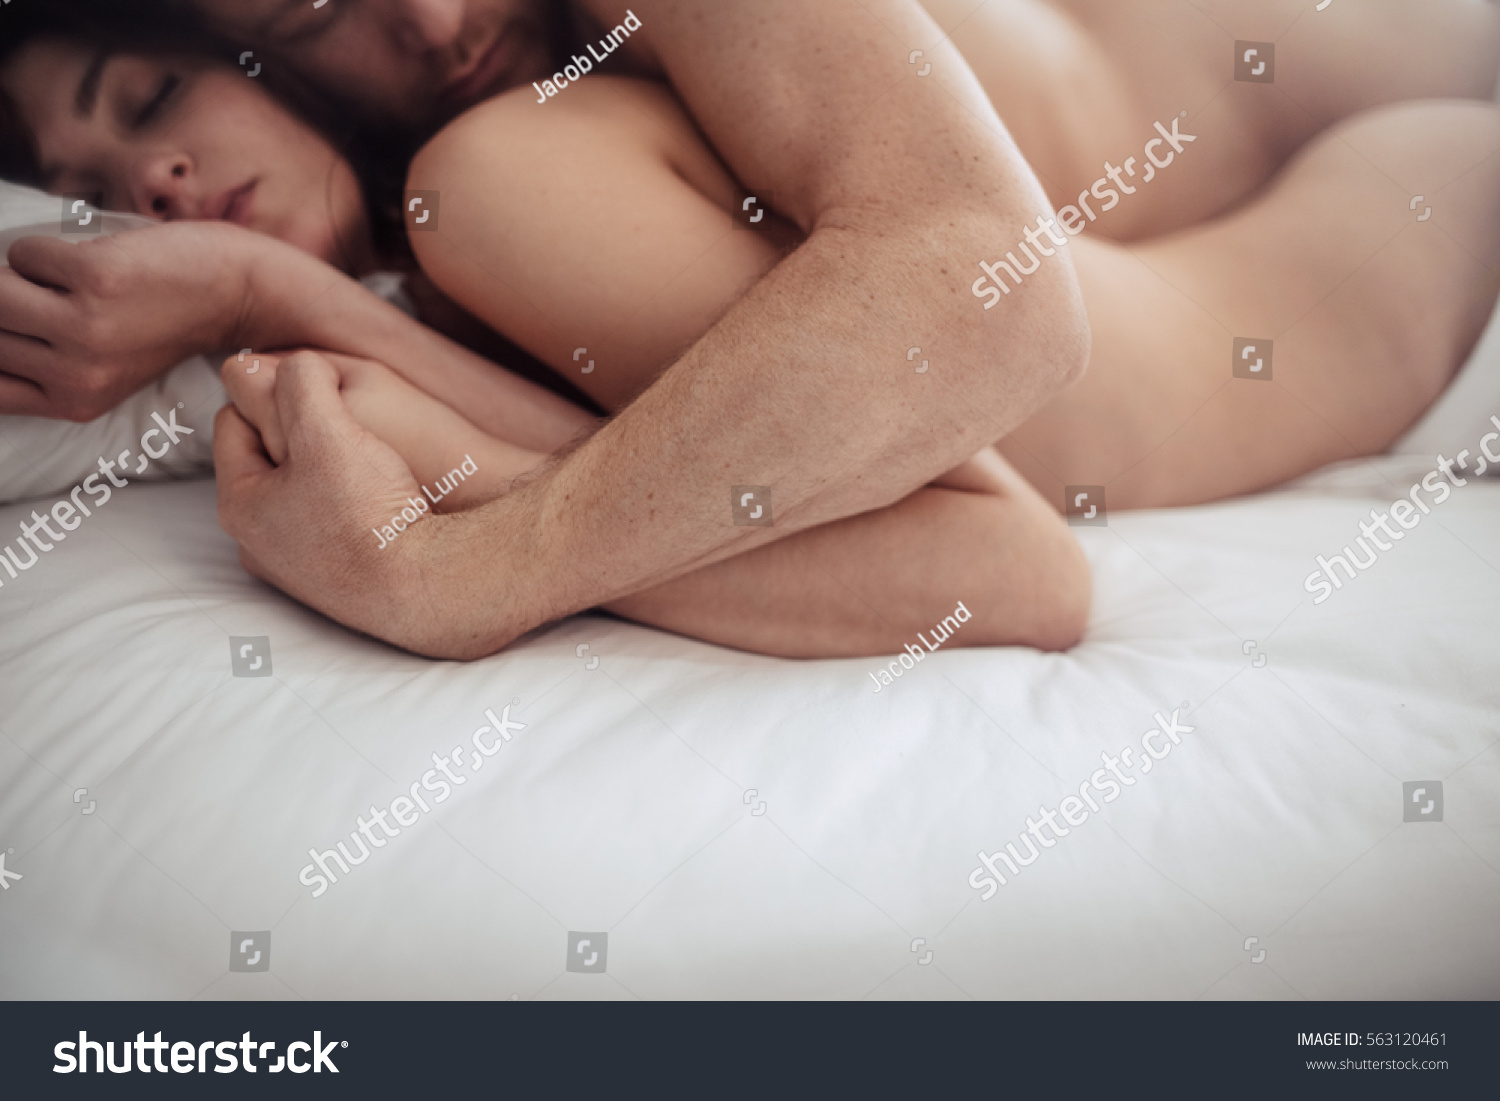 david fulvio reccomend man and woman making love porn pic